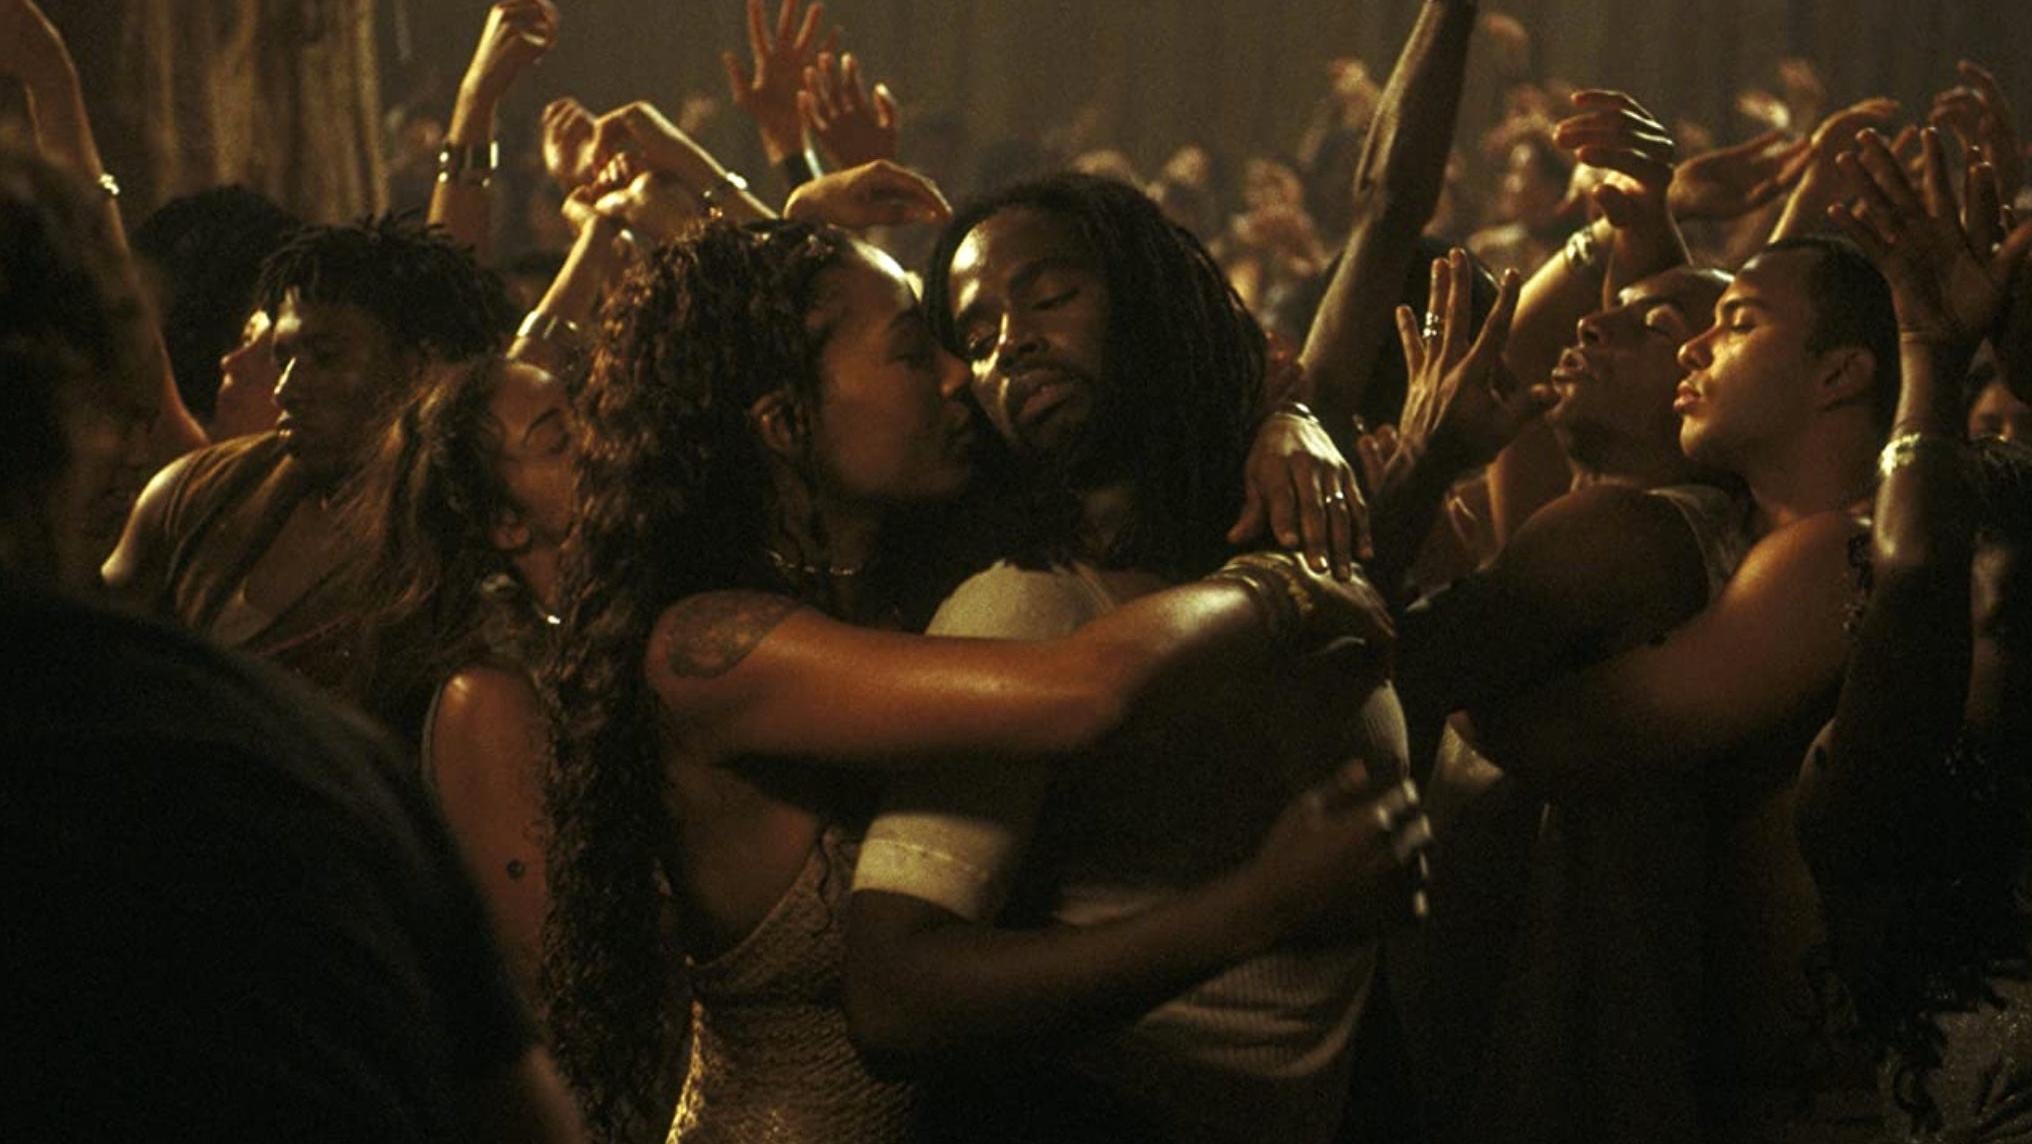 Nona Gaye and Harold Perrineau dancing in Zion. (Image: Warner Bros.)